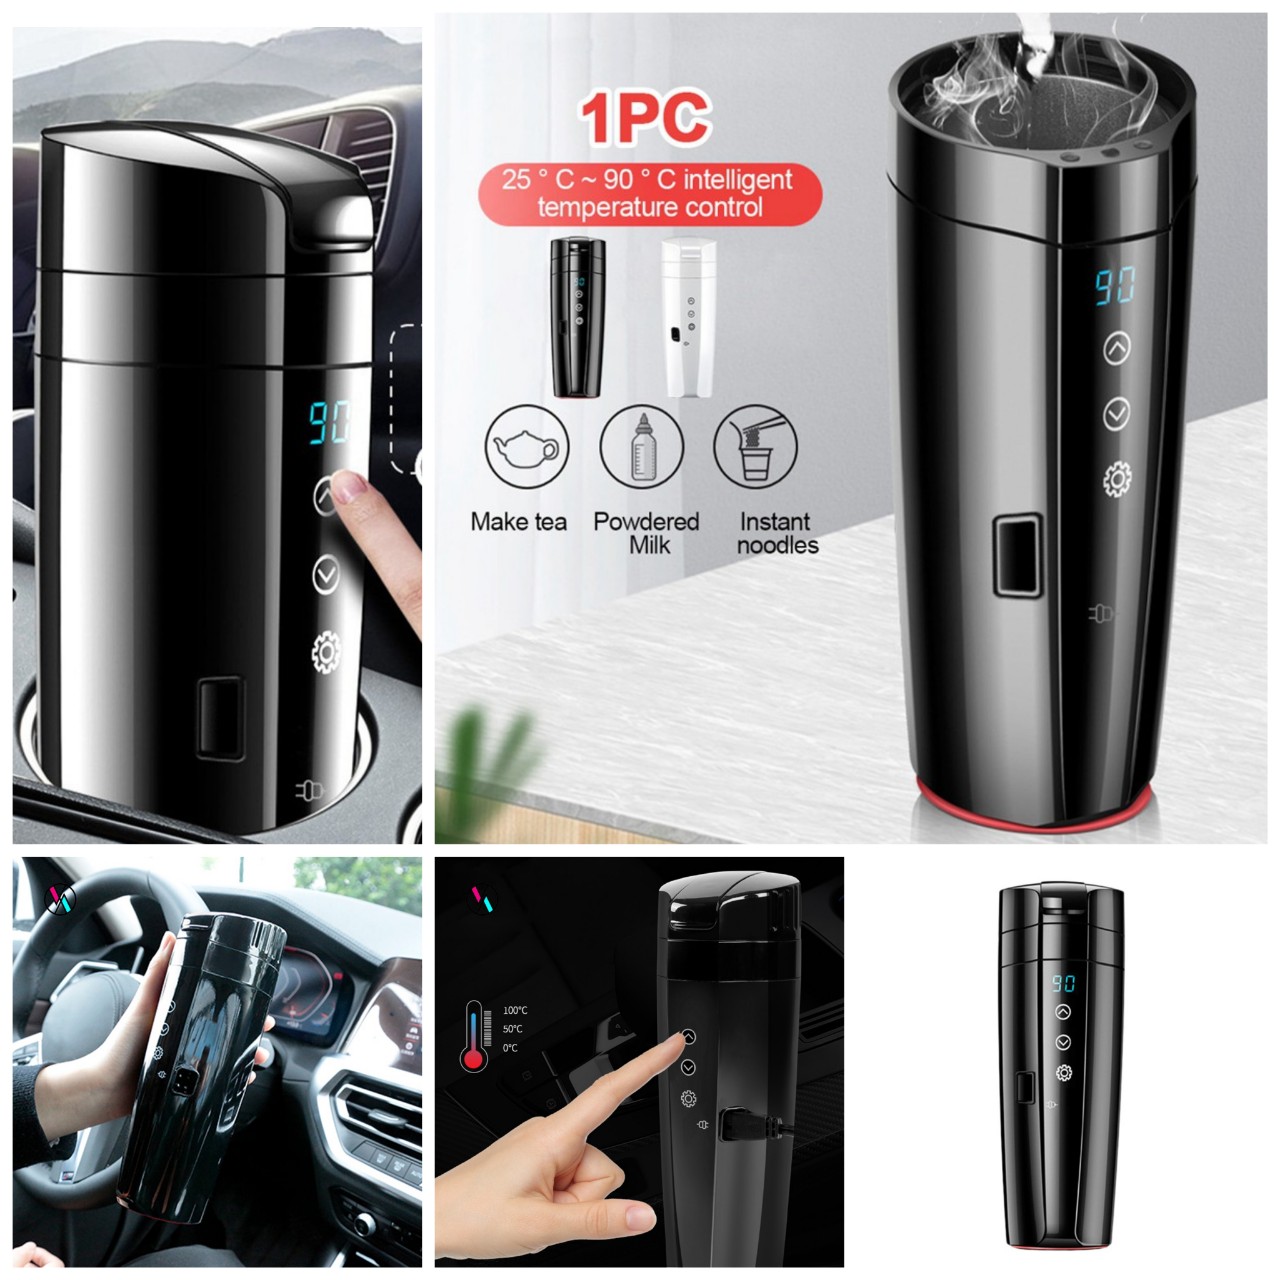 (XẢ HÀNG) Cốc đun nấu nước nóng trên ô tô xe hơi 12v-24v cảm ứng giúp pha trà, sữa, cafe, bình giữ nhiệt trên oto mẫu mới loại tốt, phụ kiện ô tô